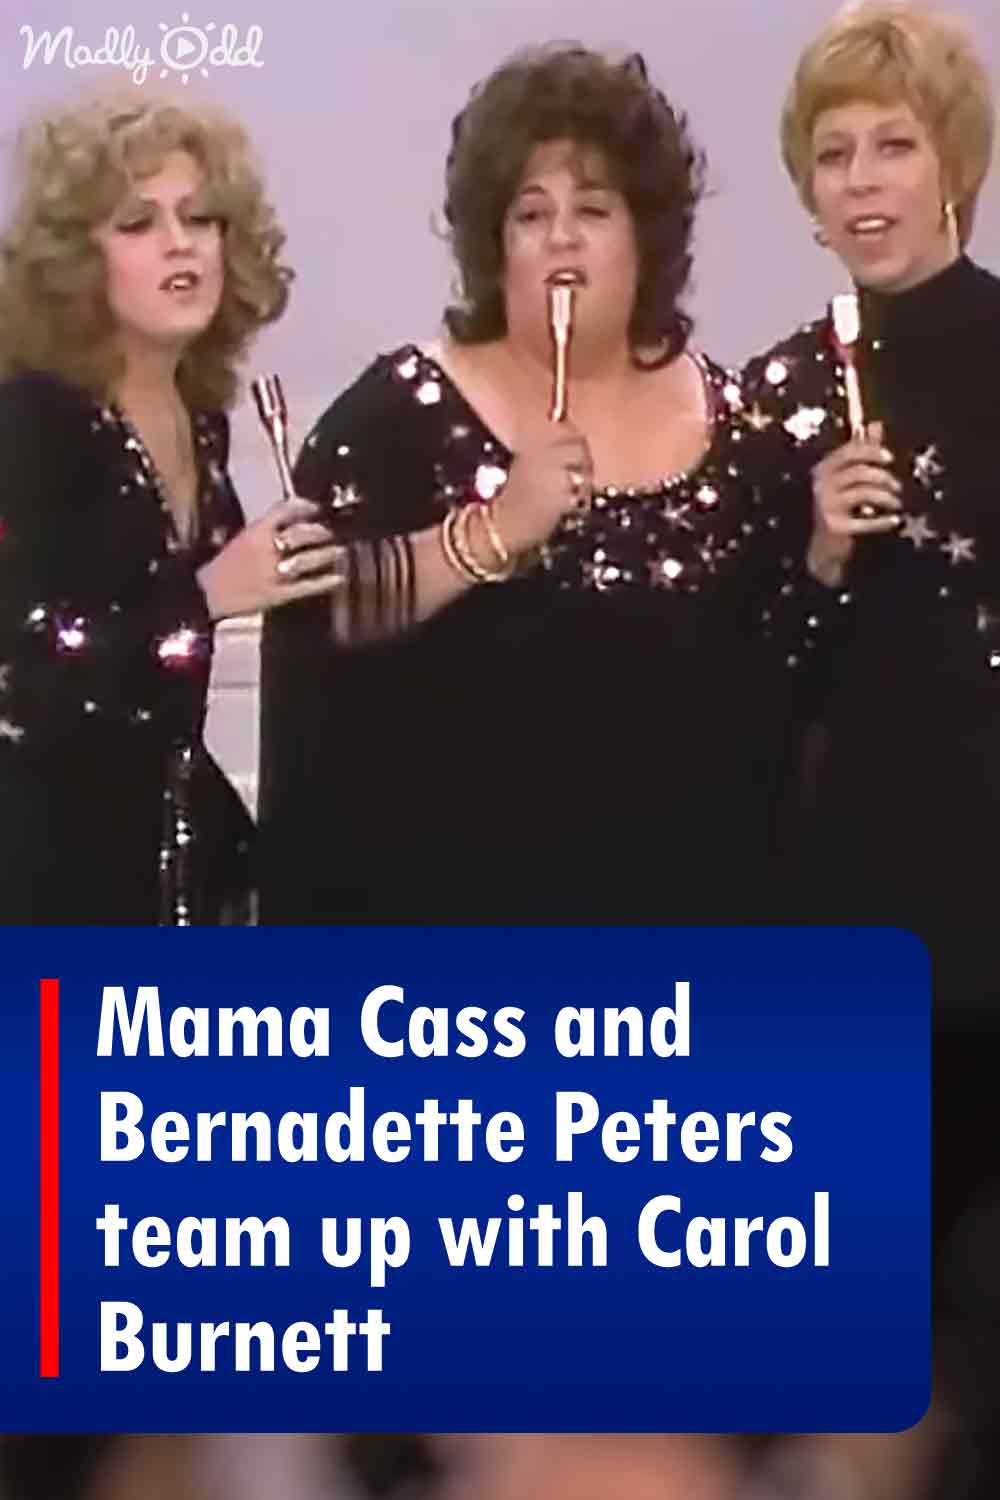 Mama Cass and Bernadette Peters team up with Carol Burnett